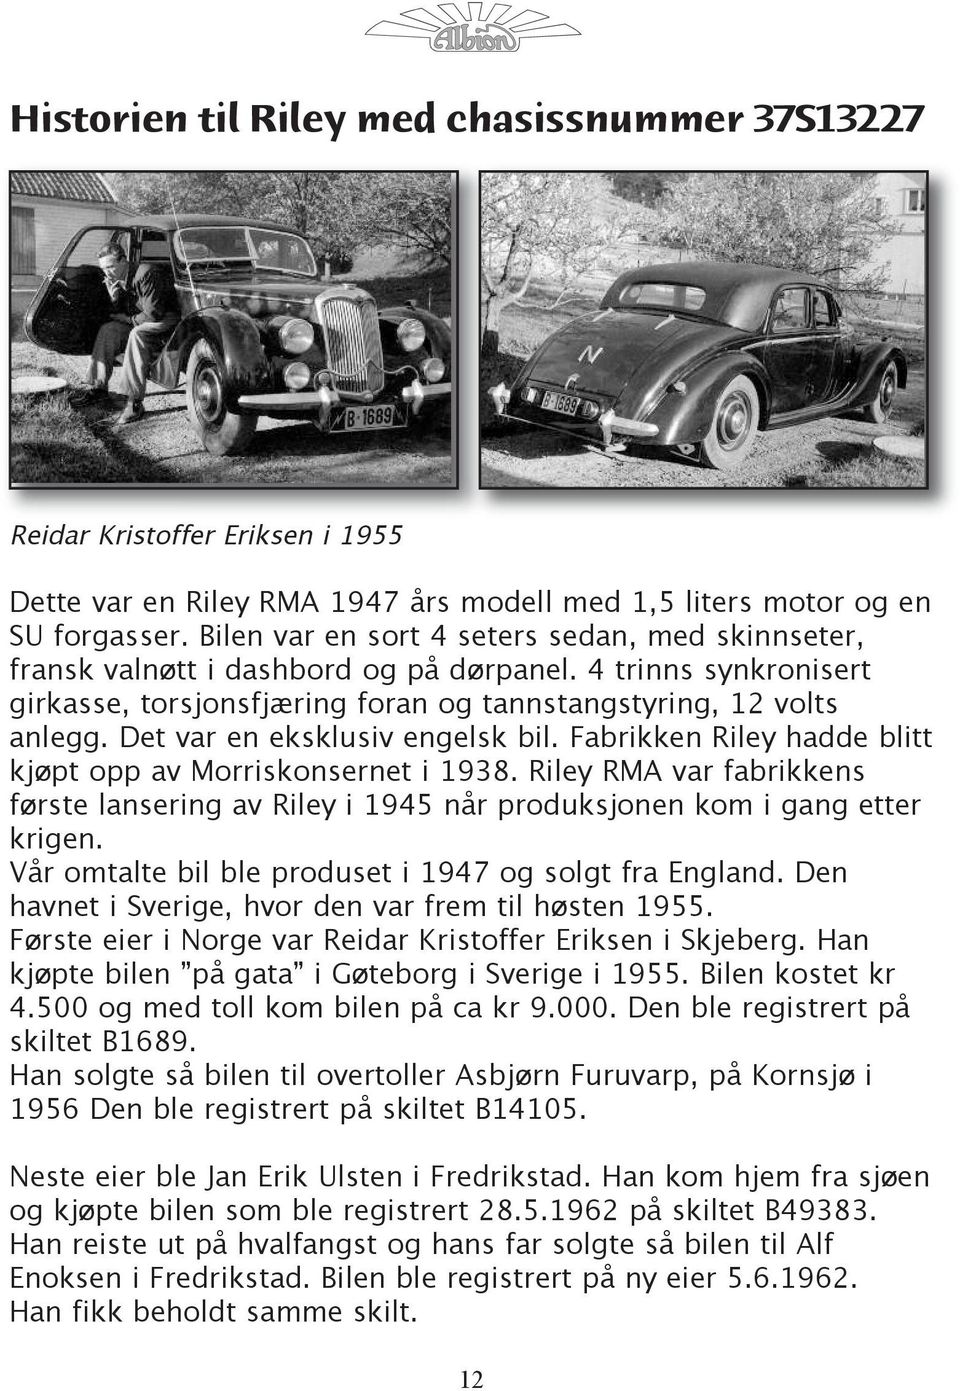 Det var en eksklusiv engelsk bil. Fabrikken Riley hadde blitt kjøpt opp av Morriskonsernet i 1938. Riley RMA var fabrikkens første lansering av Riley i 1945 når produksjonen kom i gang etter krigen.